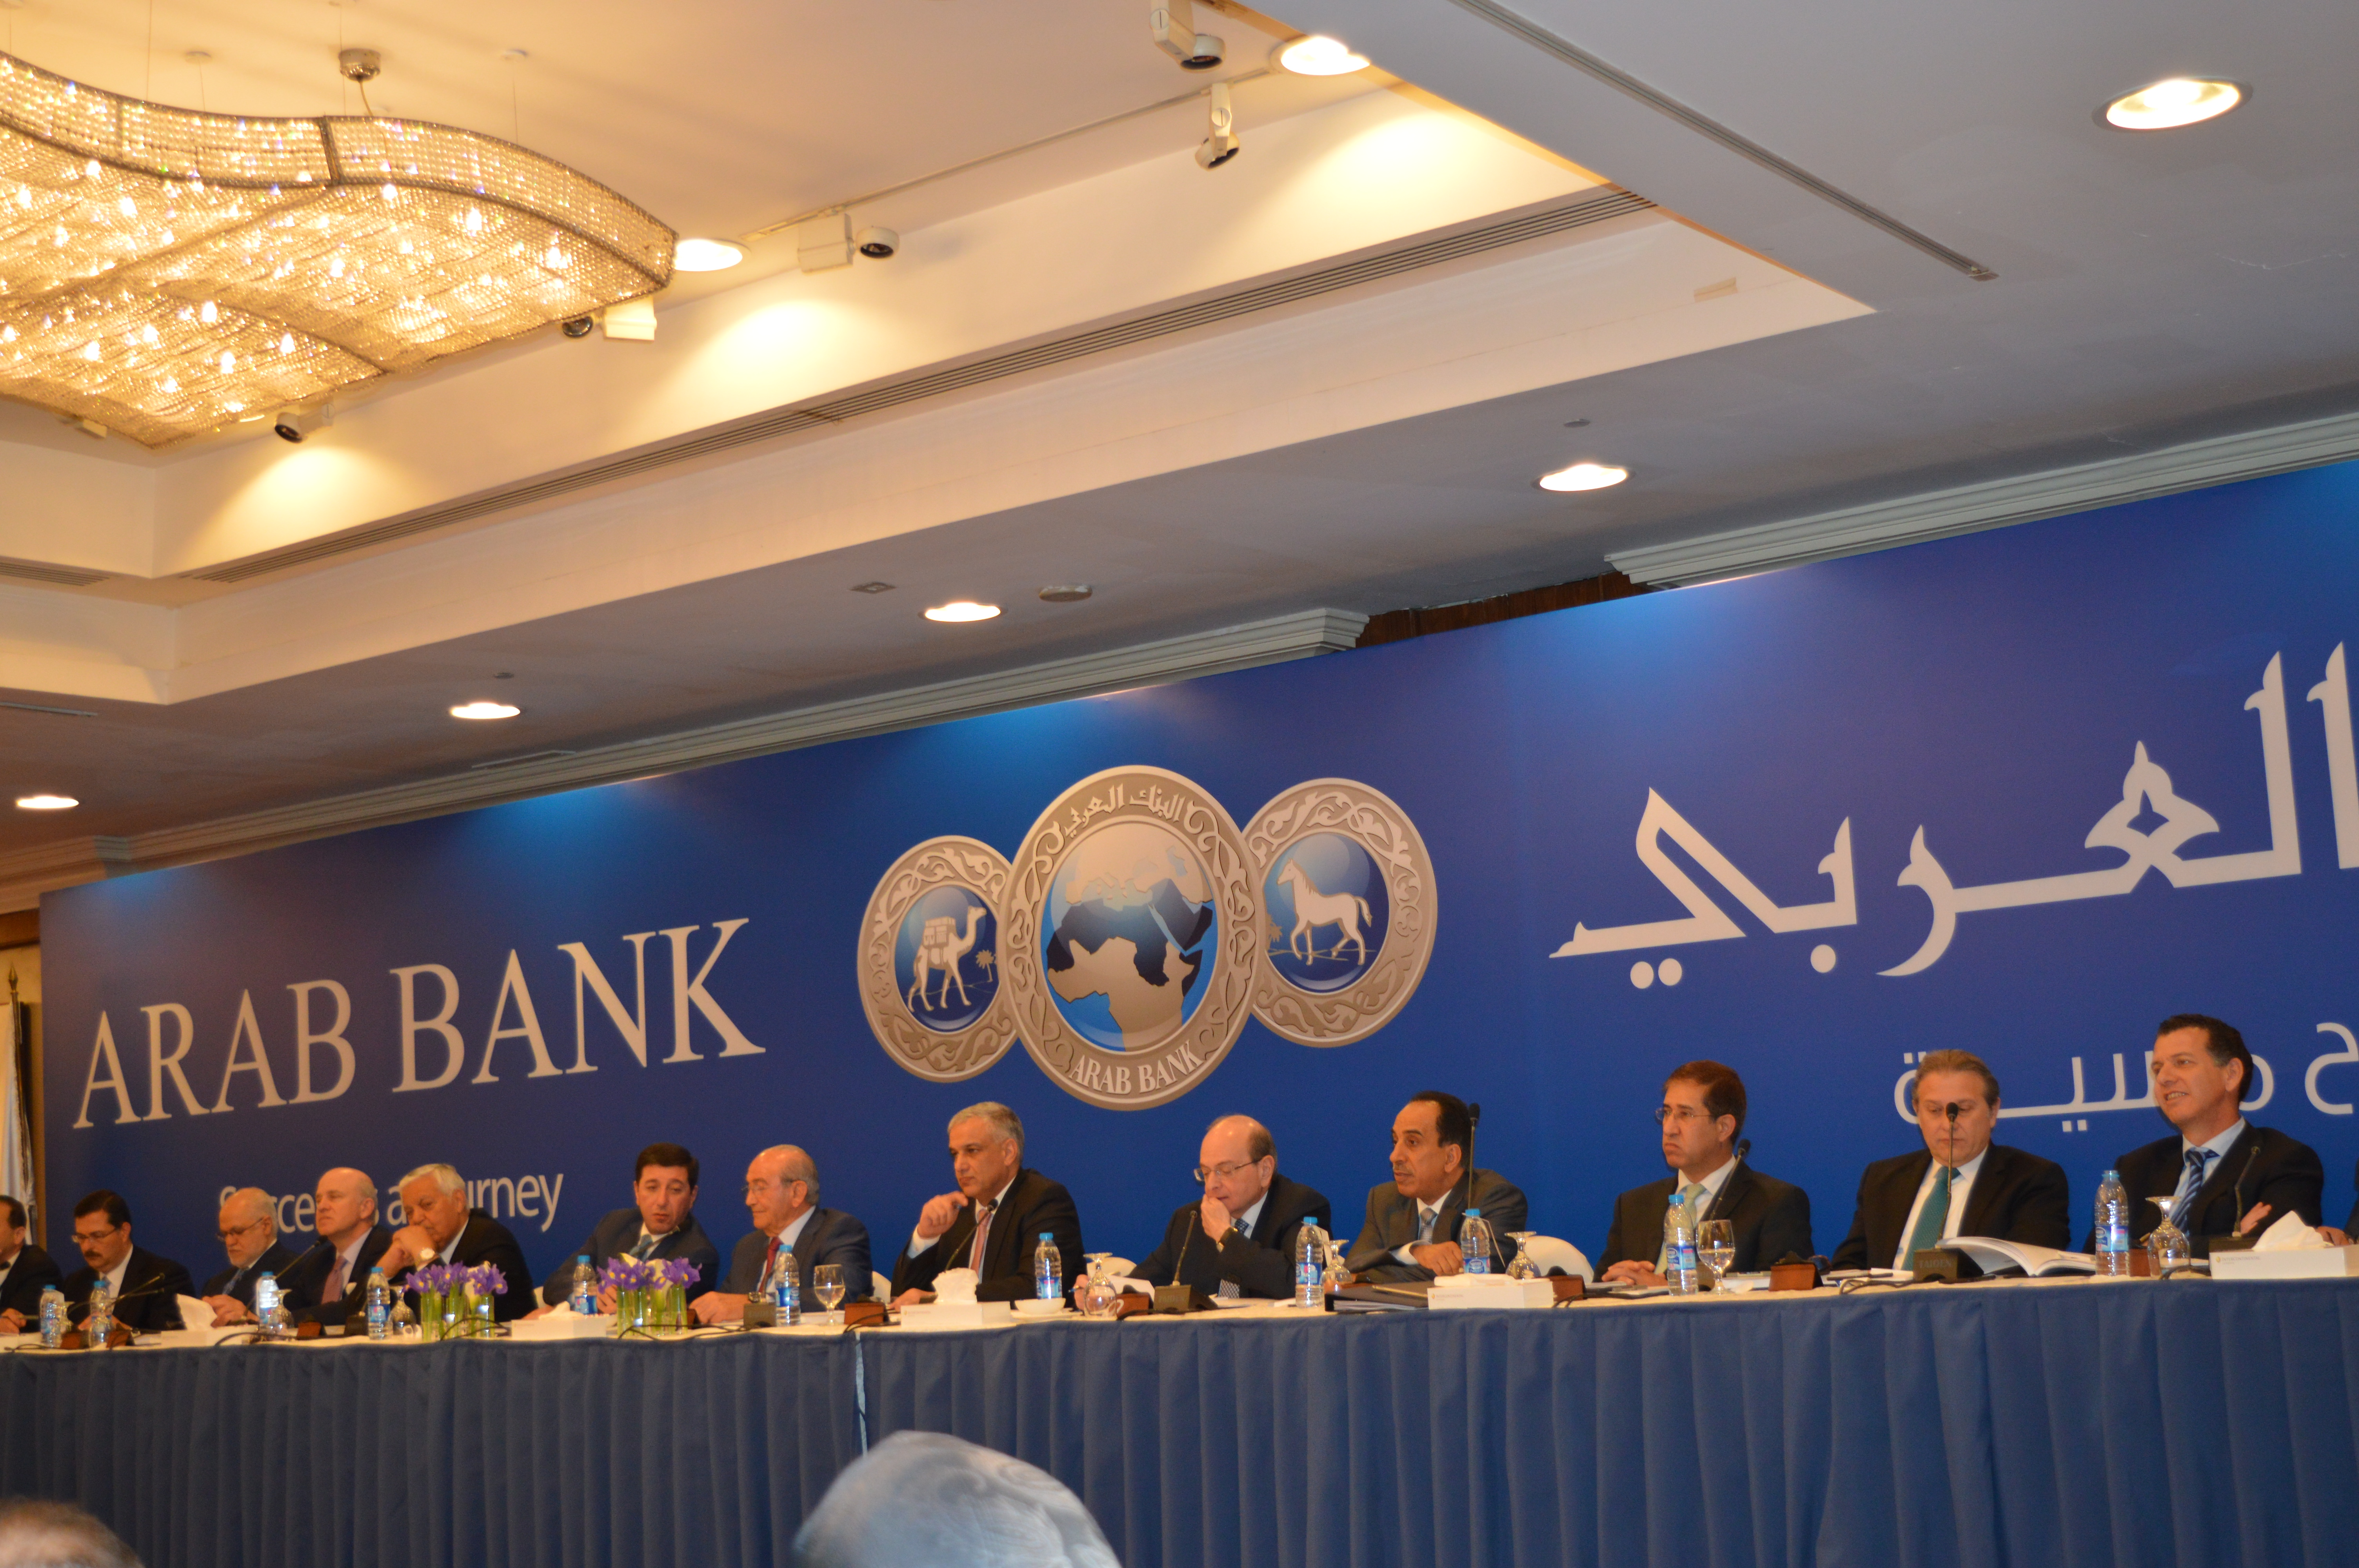 البنك العربي يوزع 256 مليون دينار أرباحاً على المساهمين